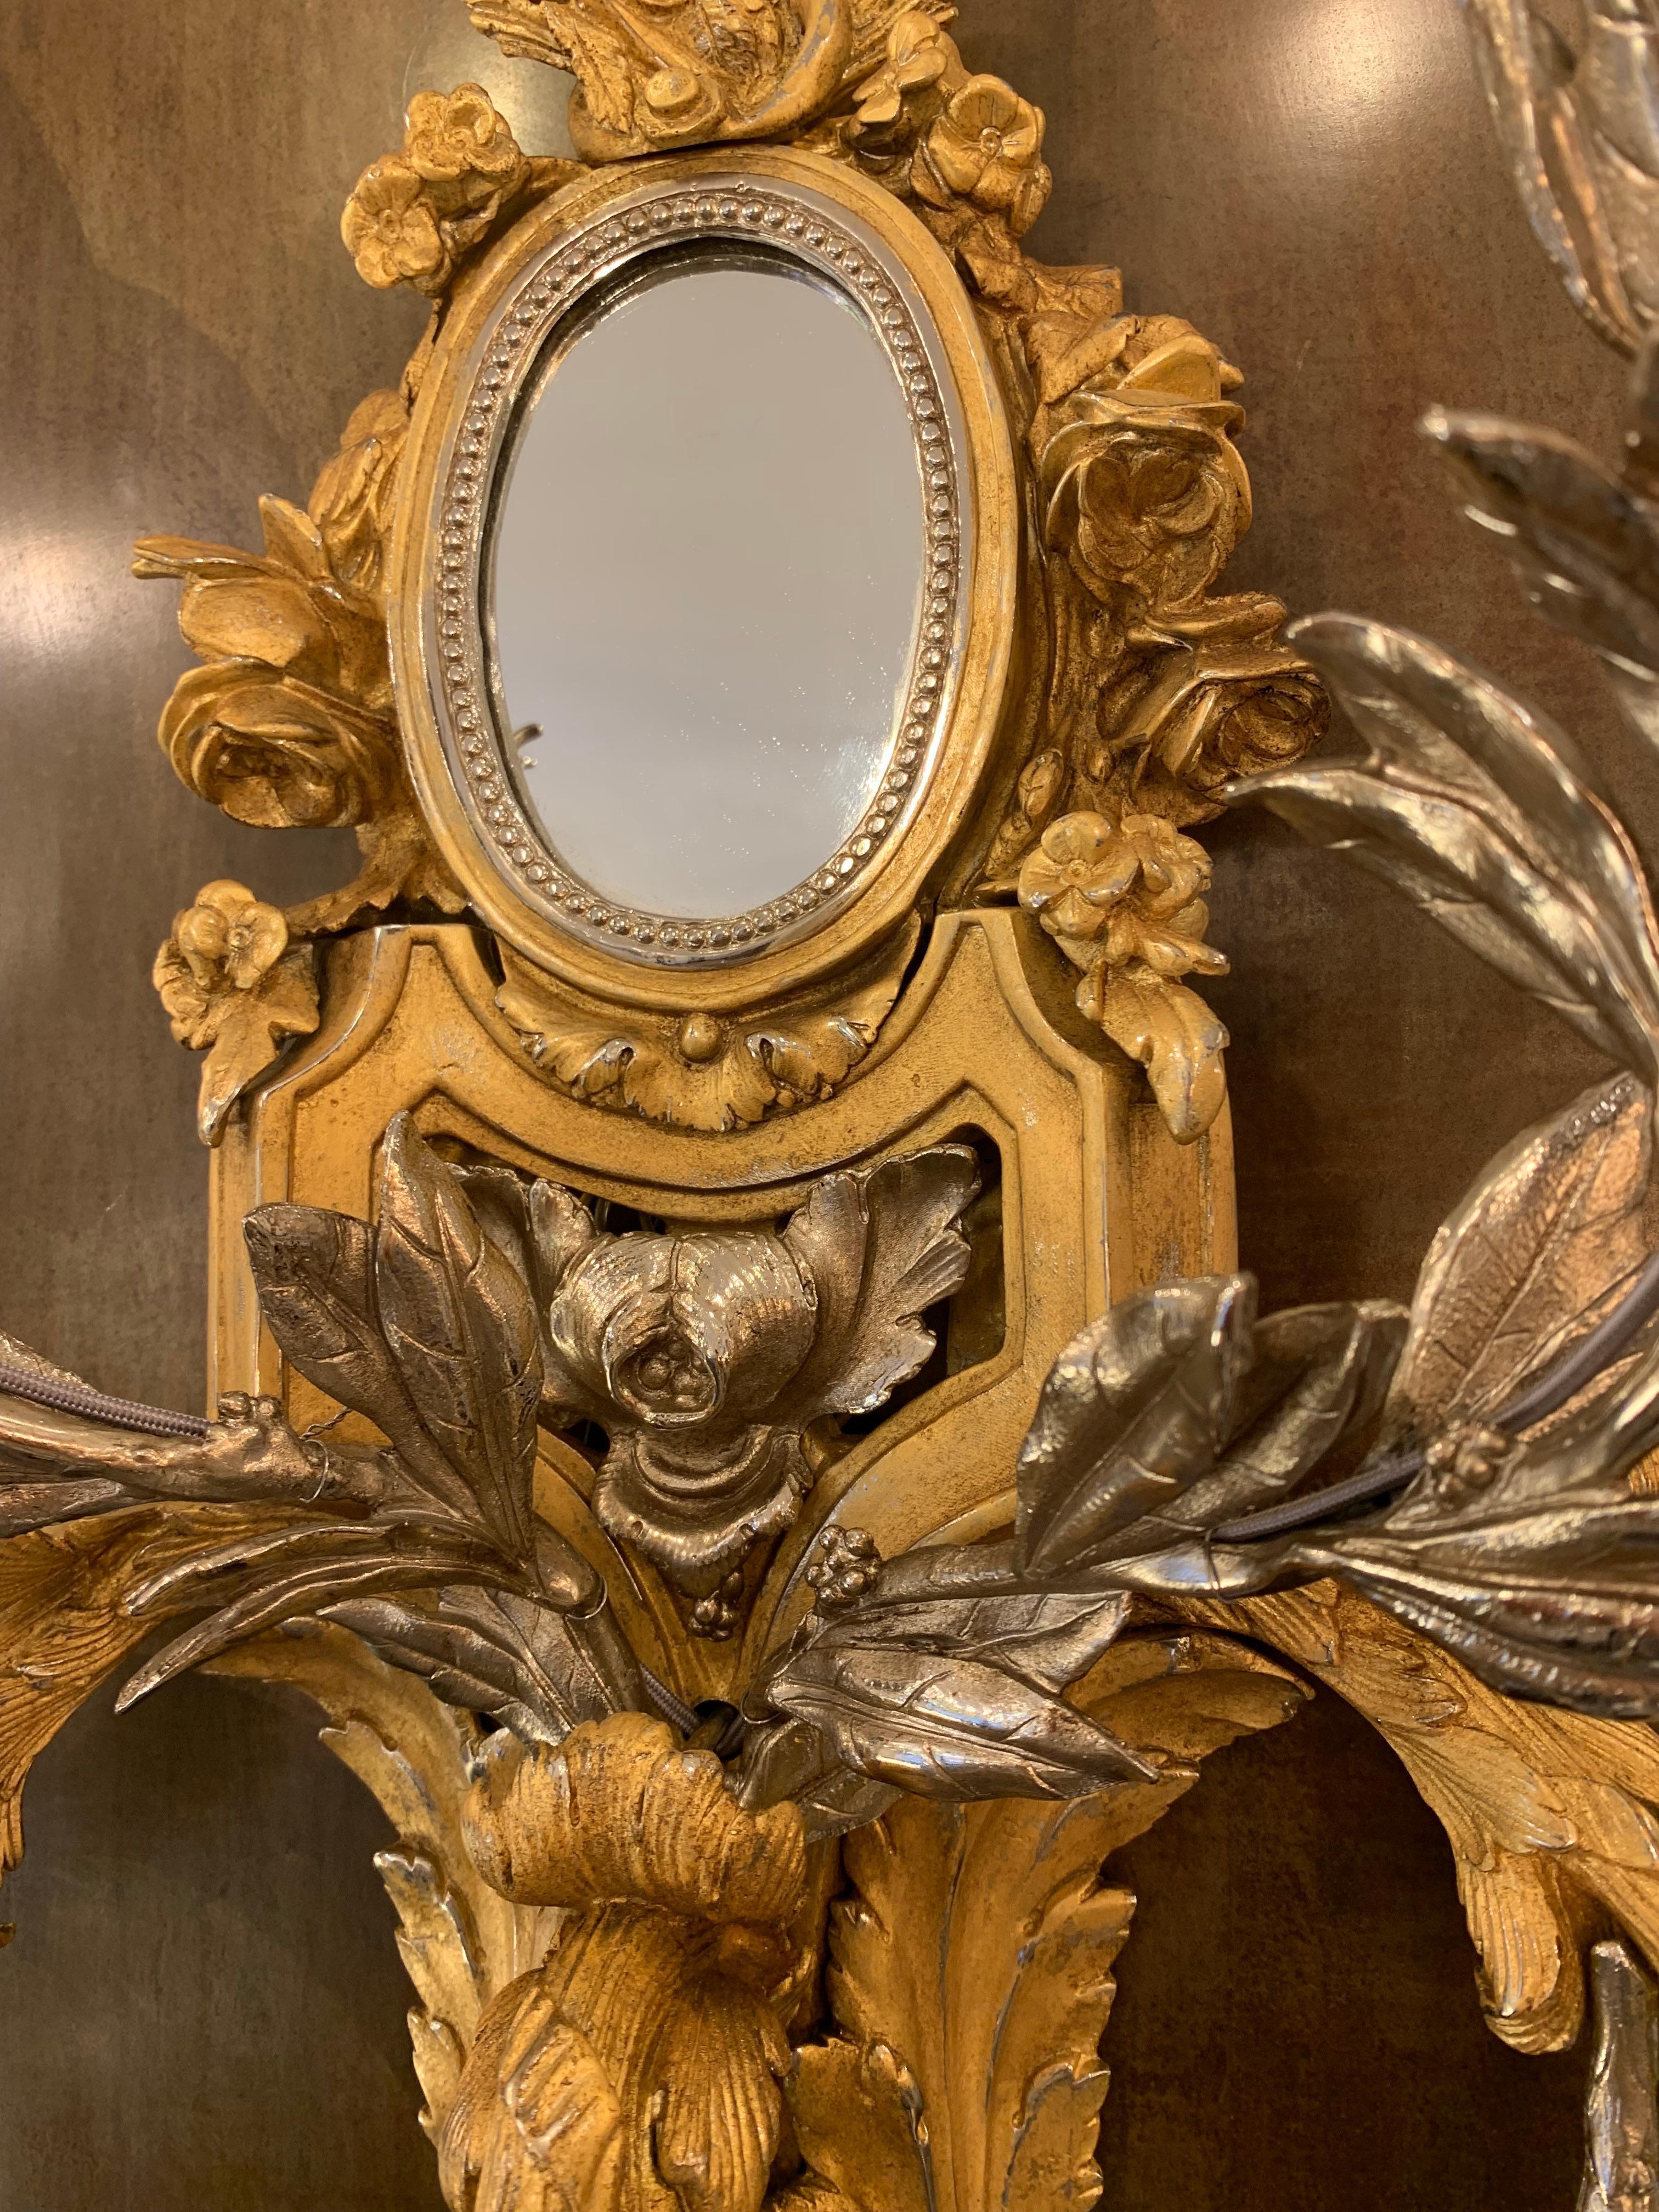 Cette applique mêle habilement plusieurs motifs et influences des grands orfèvres du XVIIIe siècle.

Le miroir d'une part, qui rappelle l'évolution de l'éclairage à l'époque. En effet, les bras de lumière sont imposés au début du XVIIIe siècle en